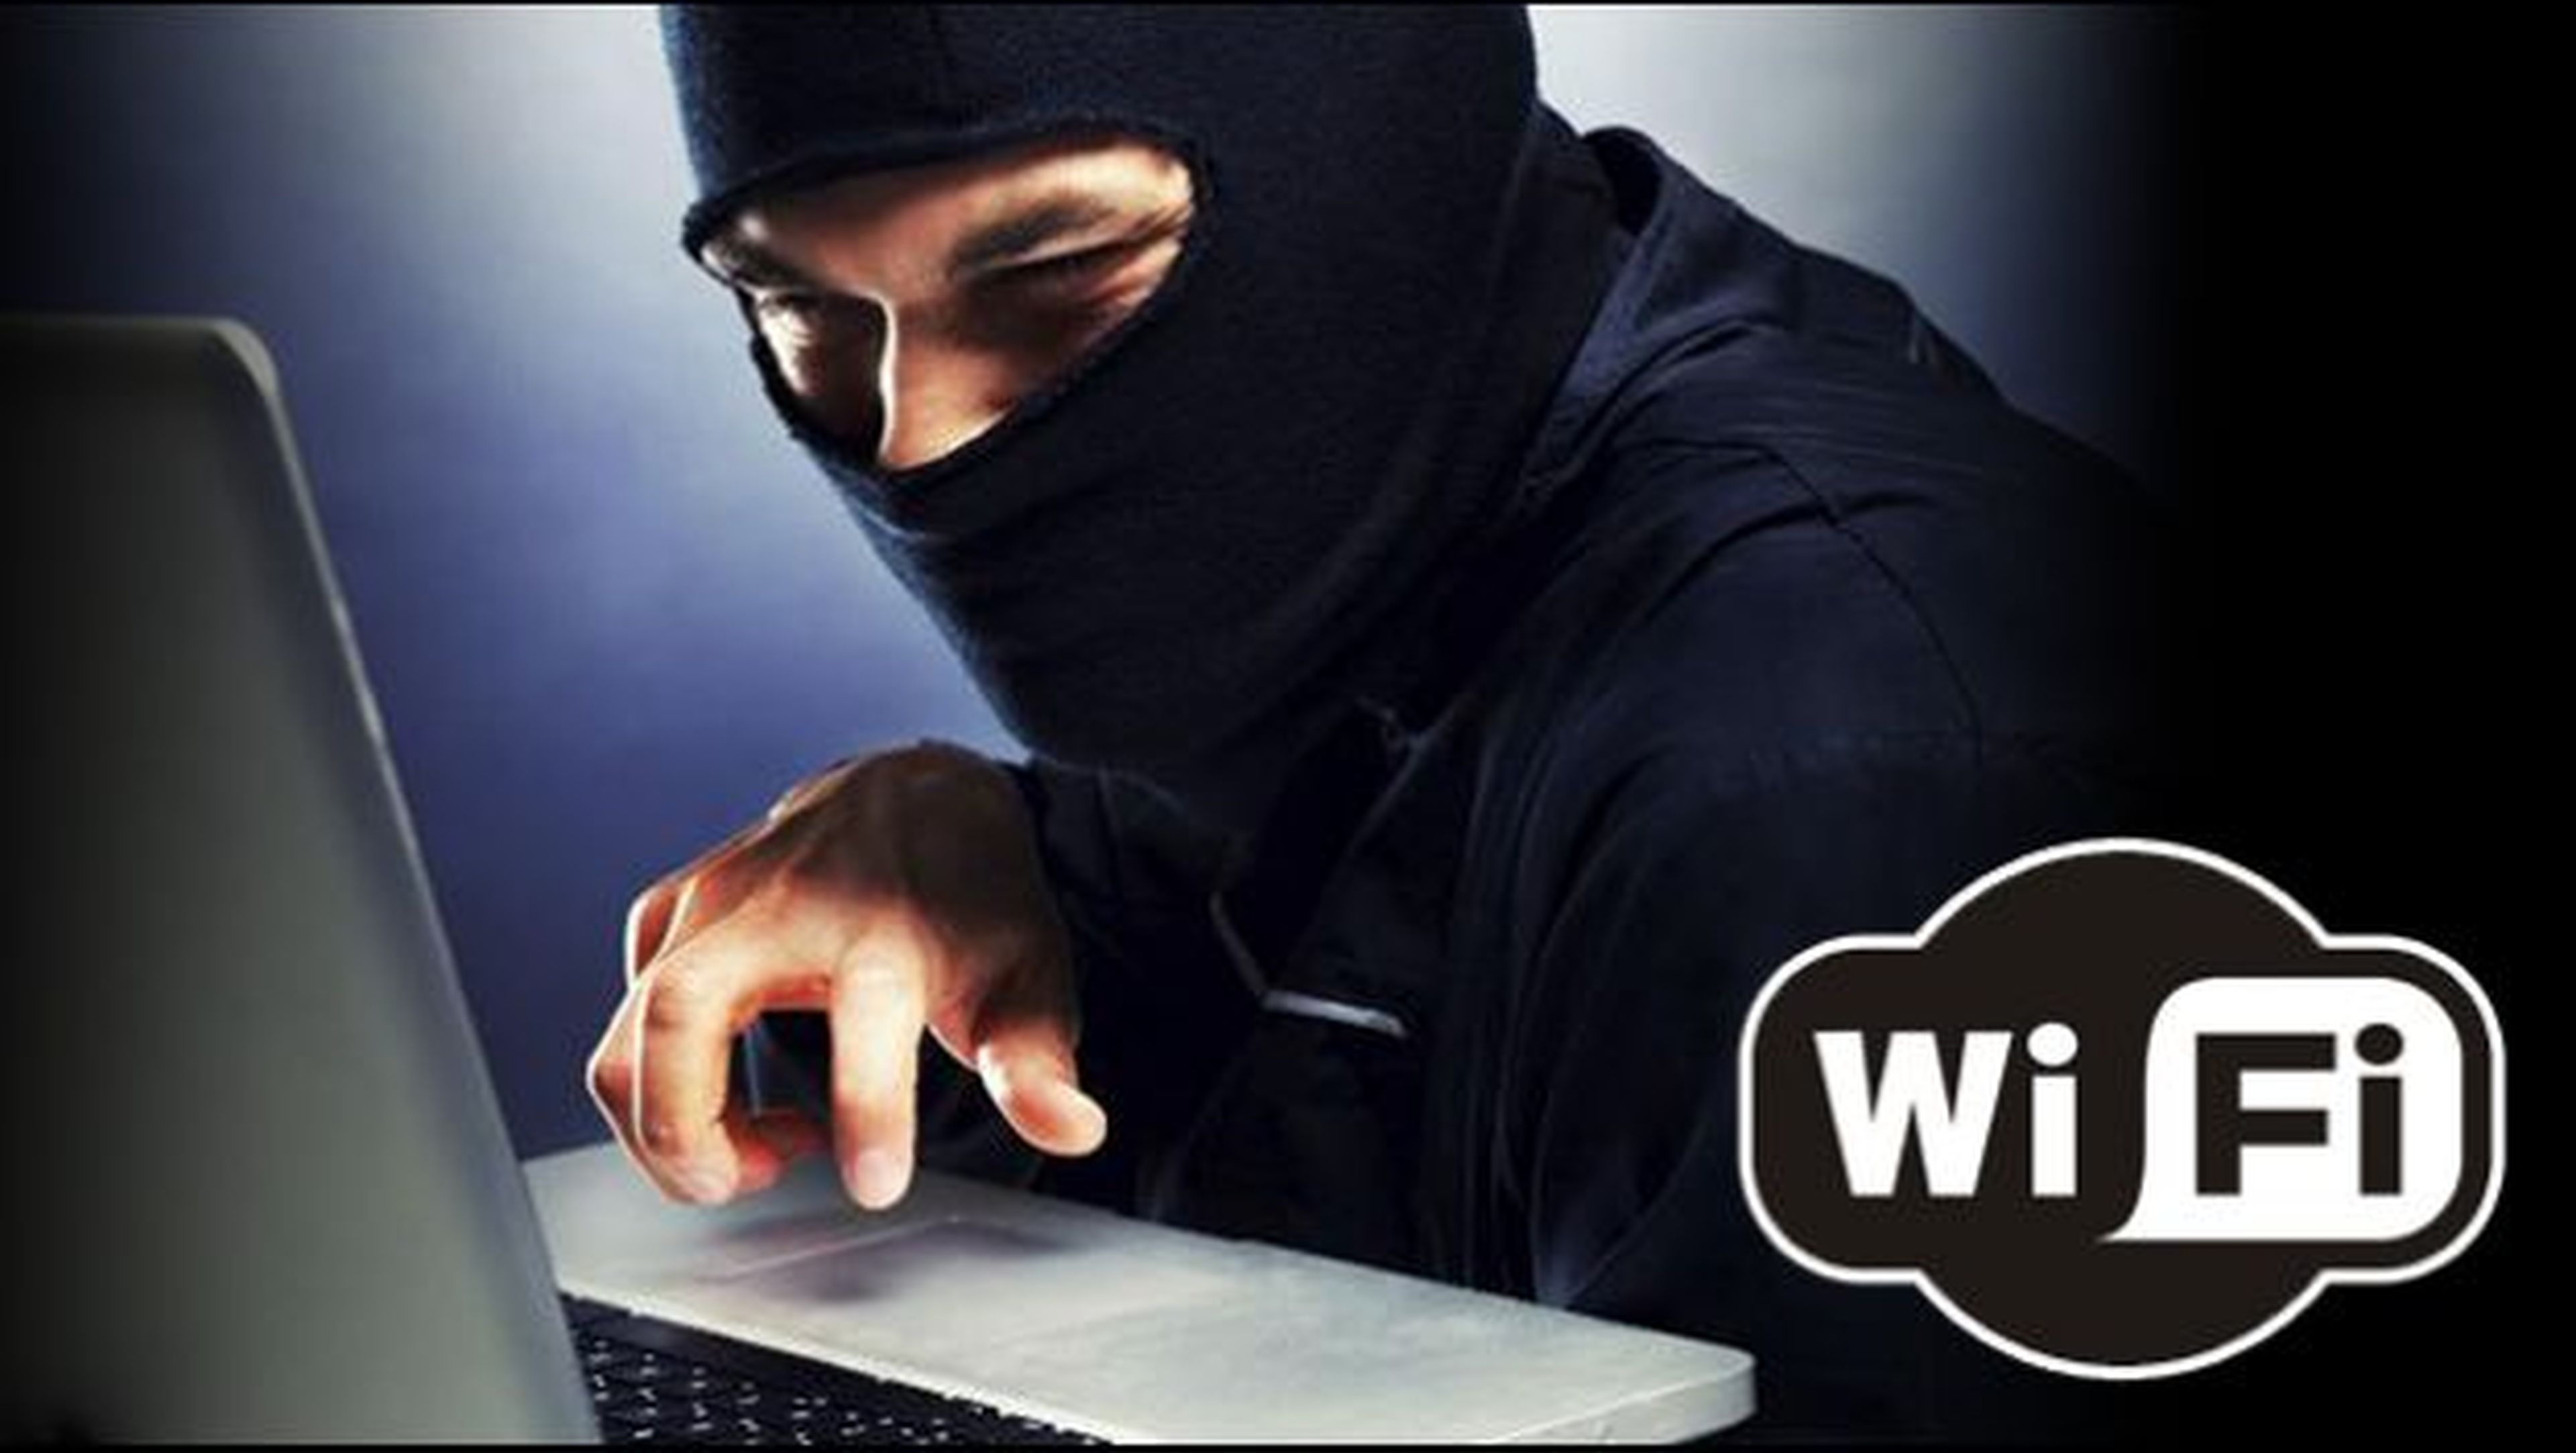 Negocio robar wifi vecino hackear contraseña